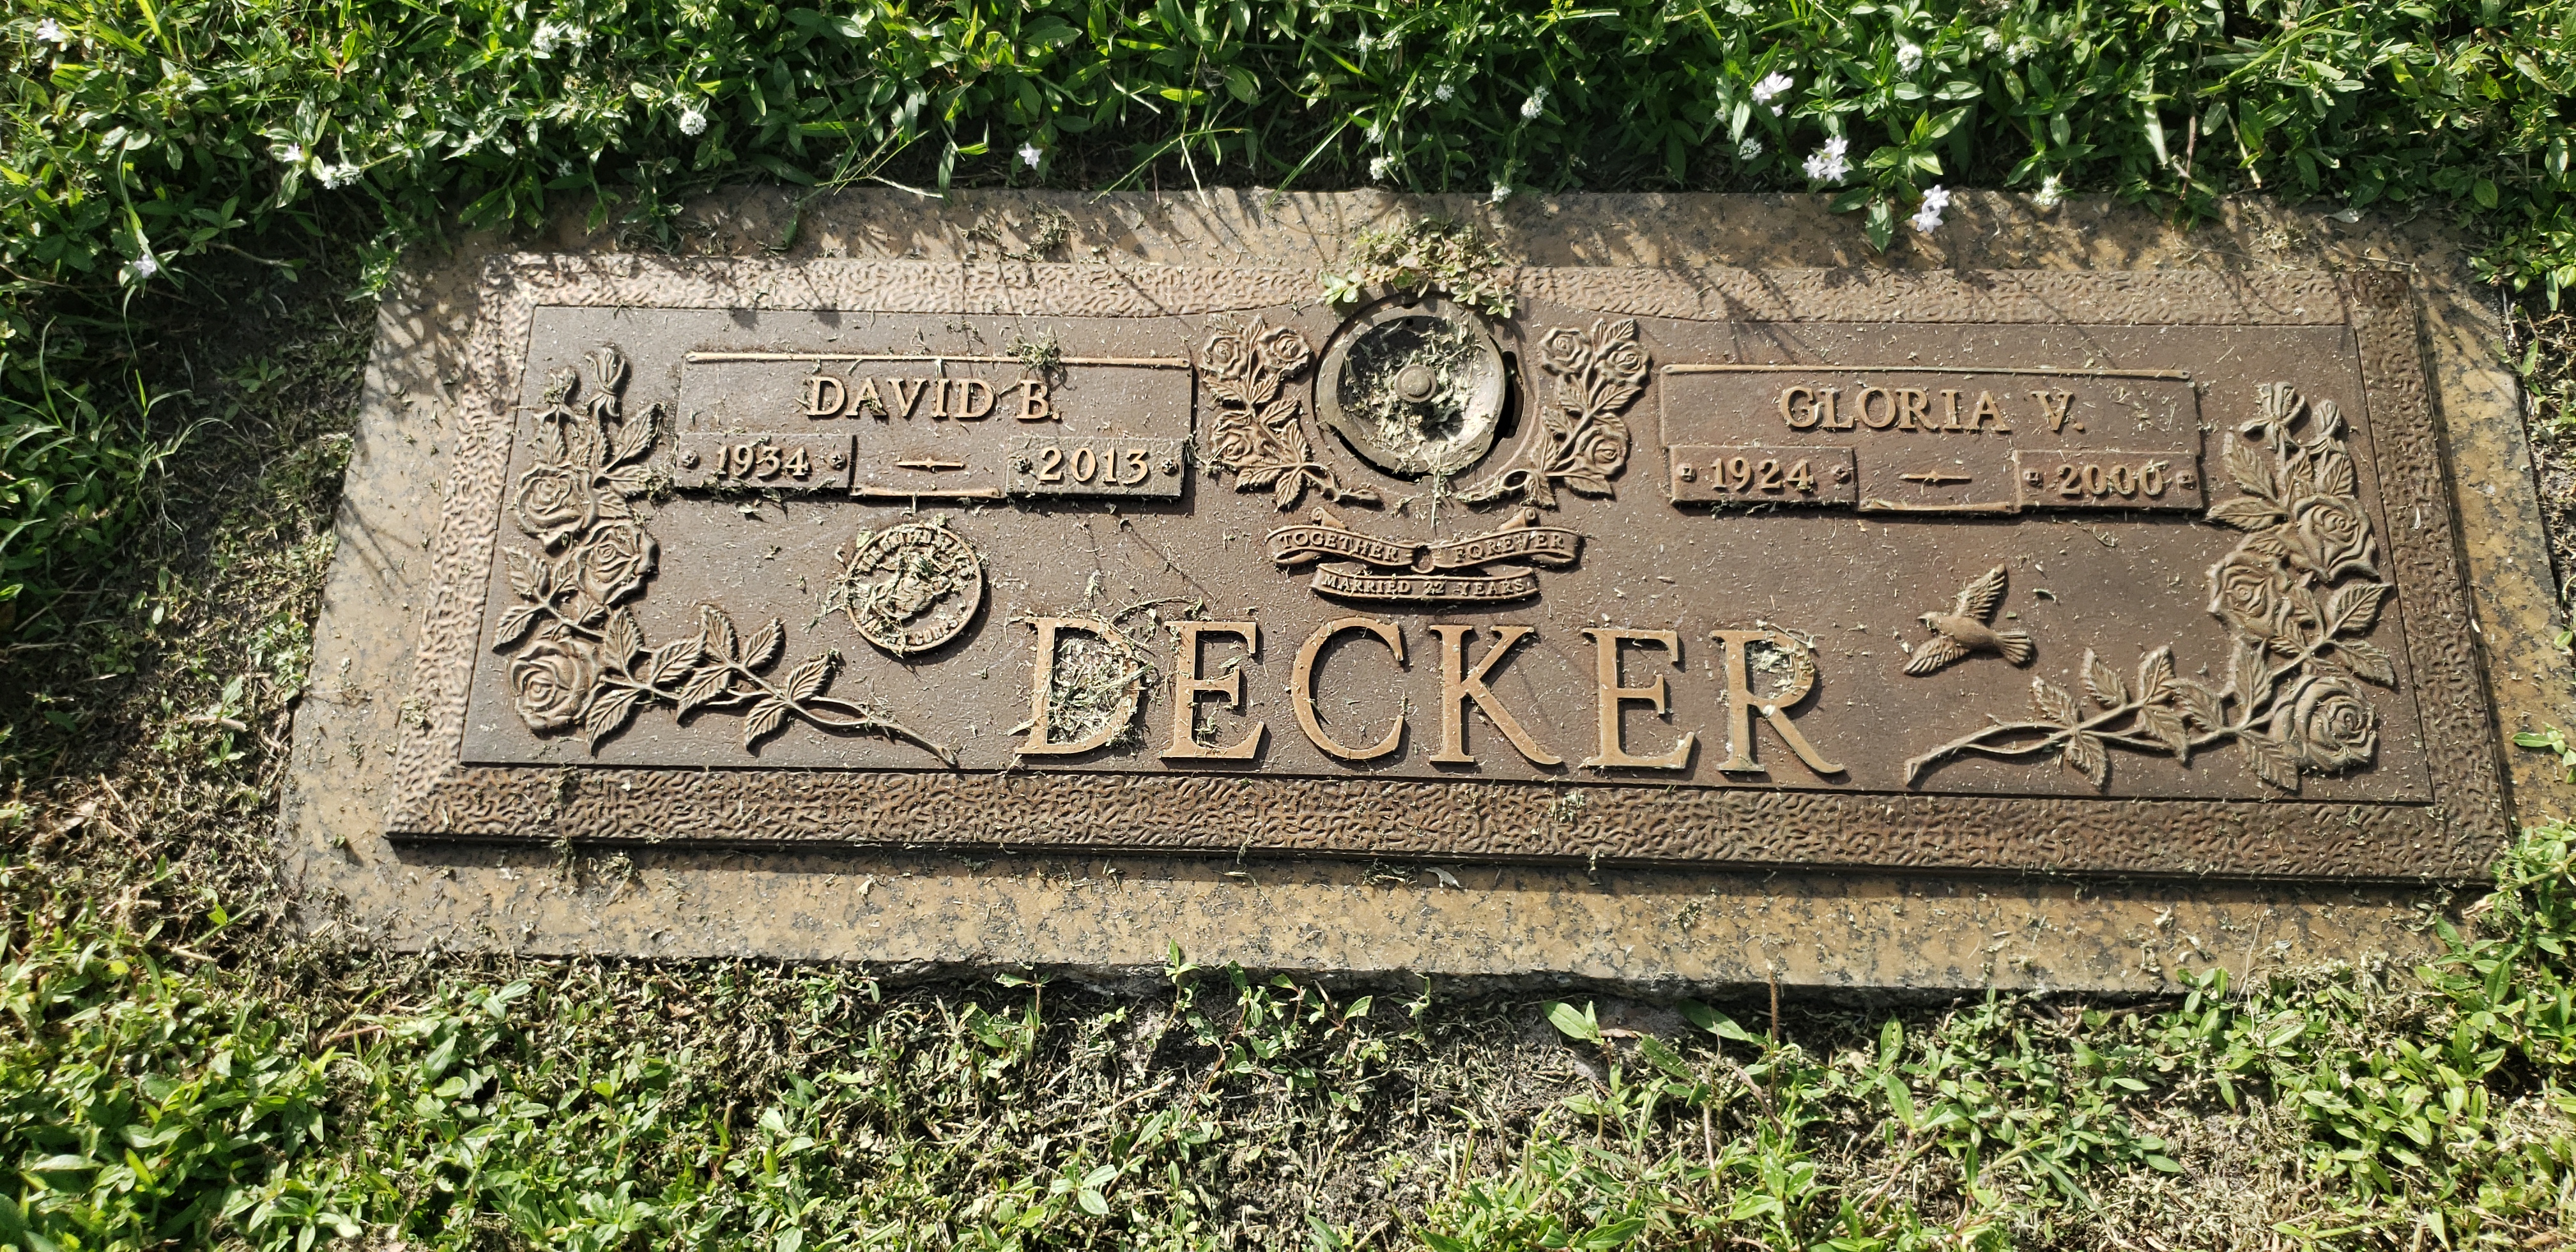 David B Decker